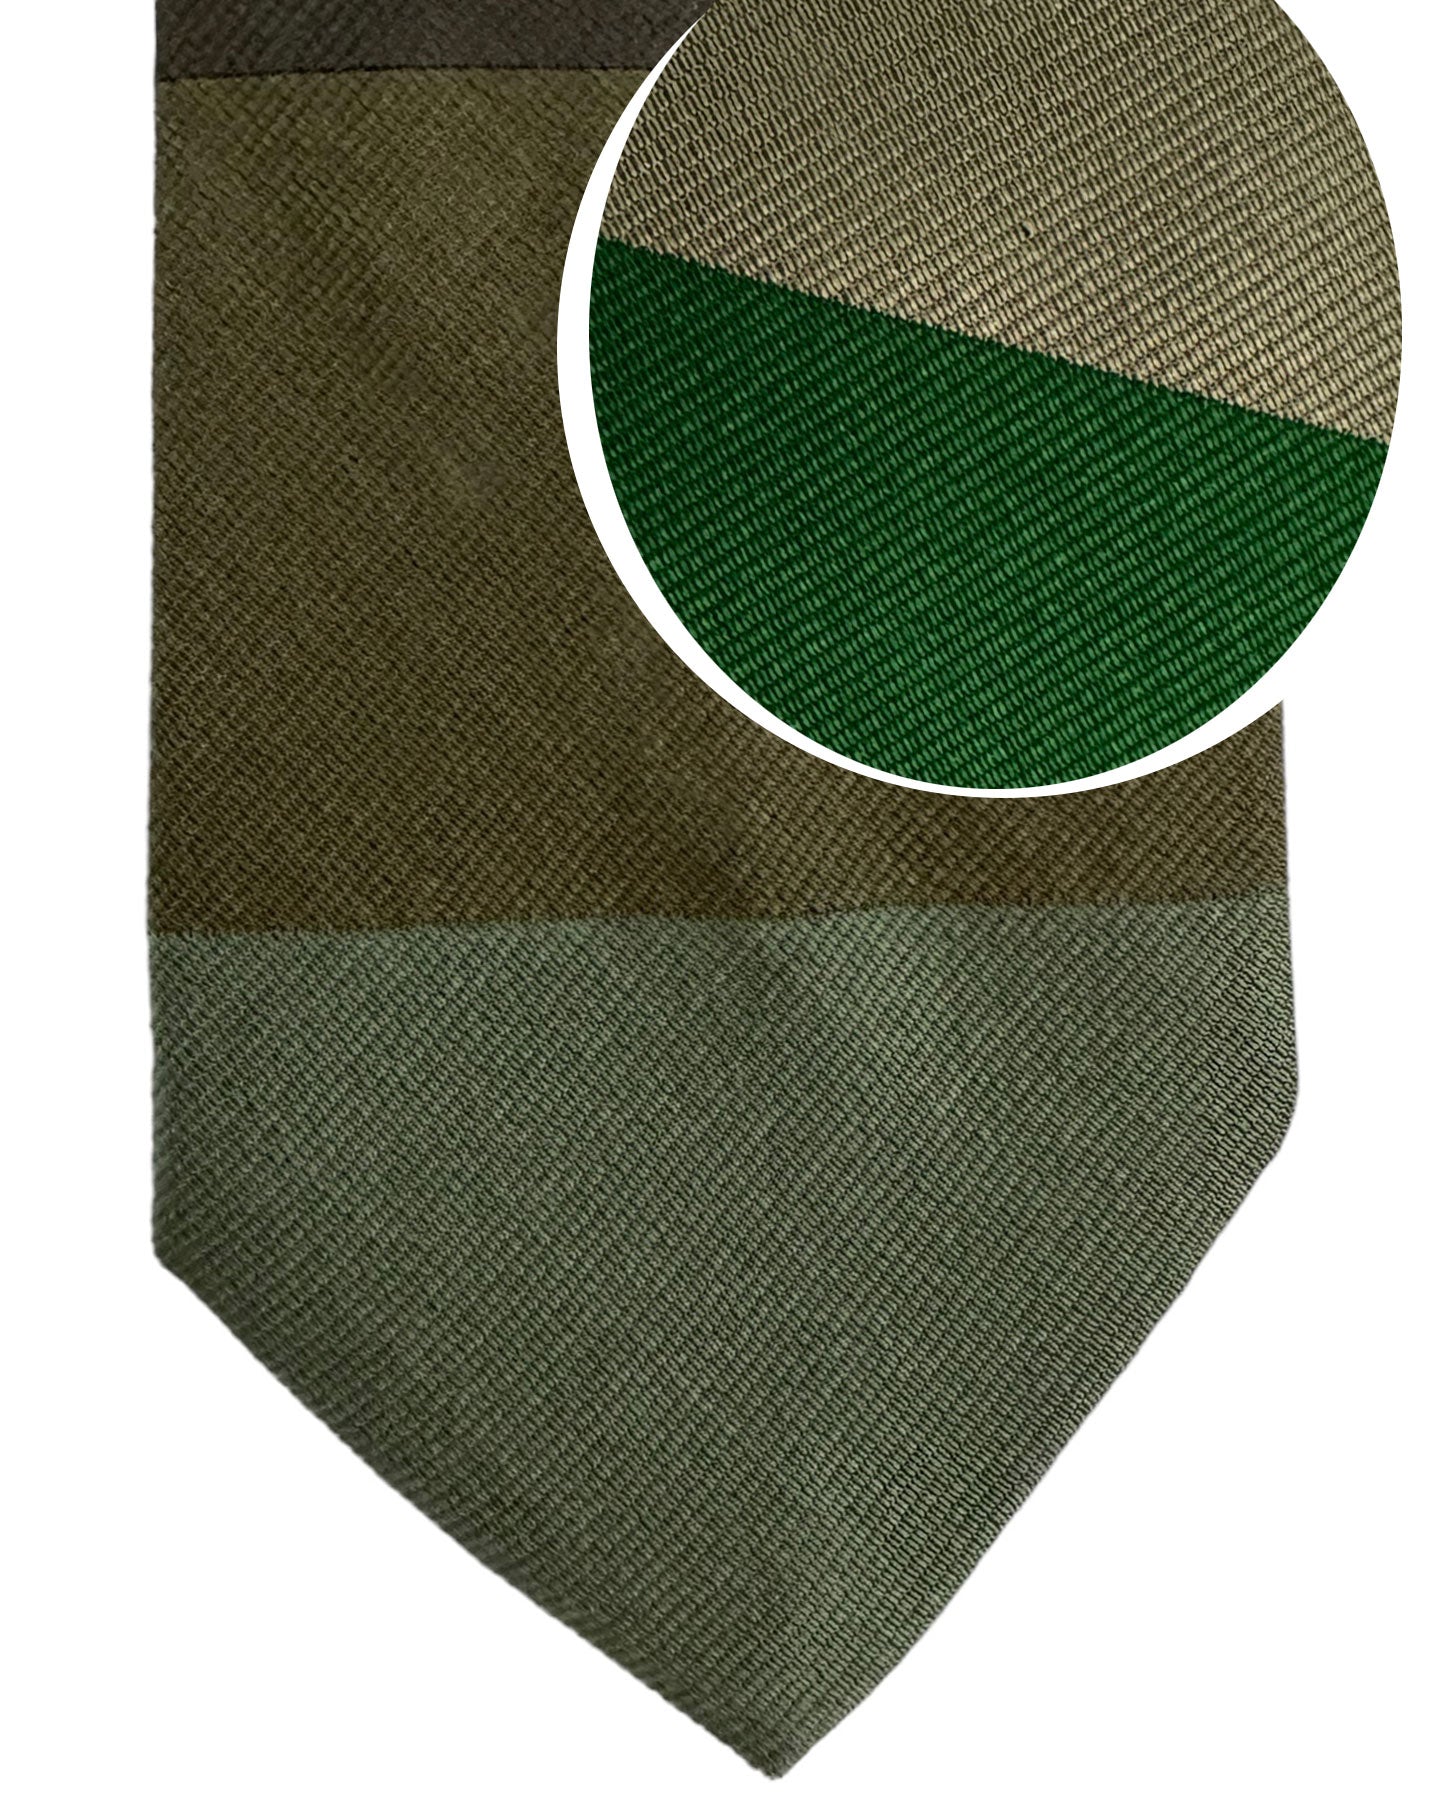 Gene Meyer Silk Tie Taupe Green Original Design